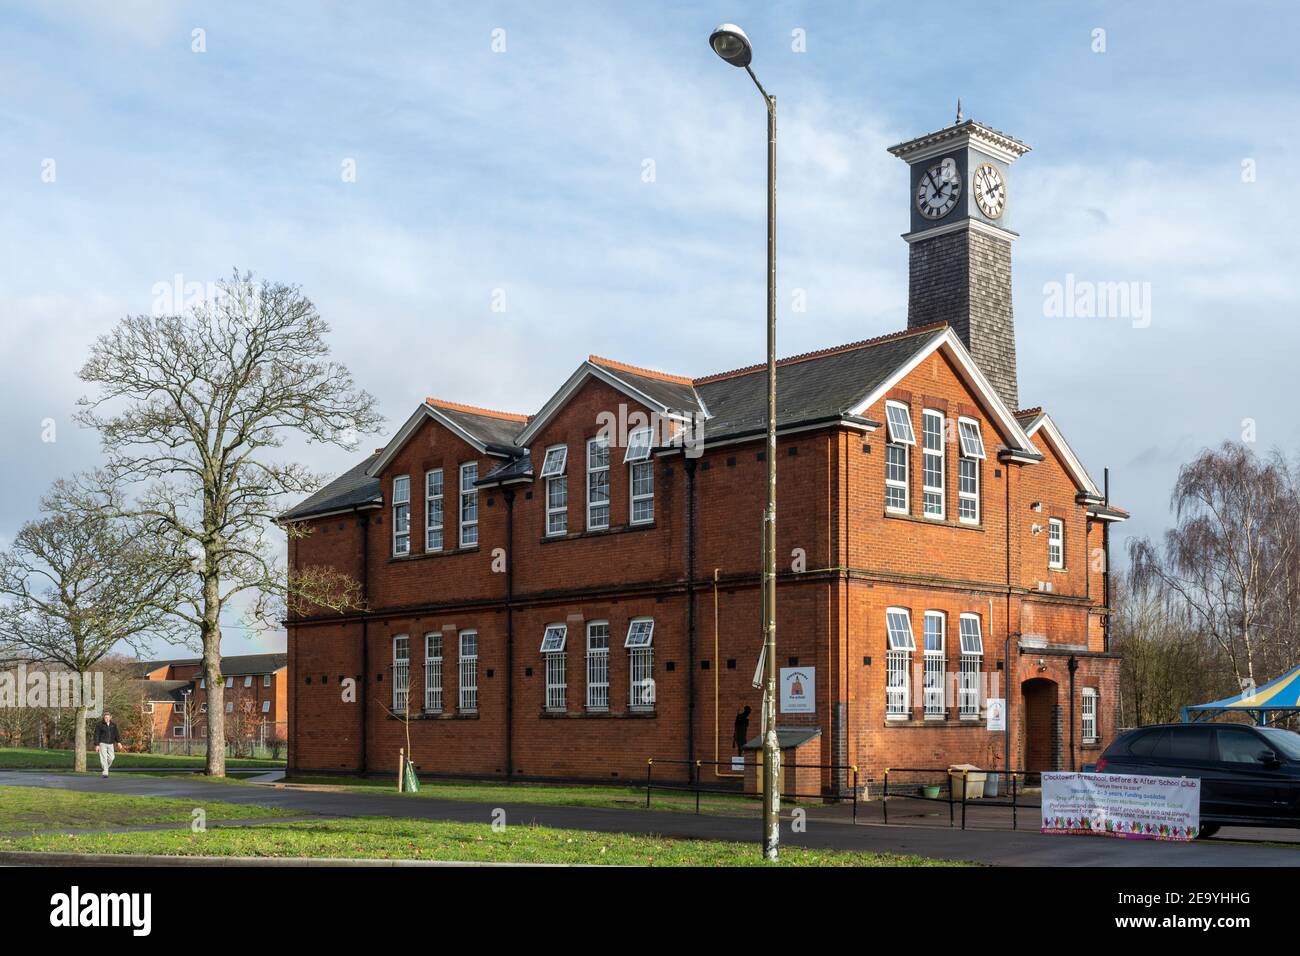 Clockhouse Gebäude in Aldershot, Hampshire, Großbritannien, früher eine Armeeschule, jetzt eine Kinderschule Stockfoto